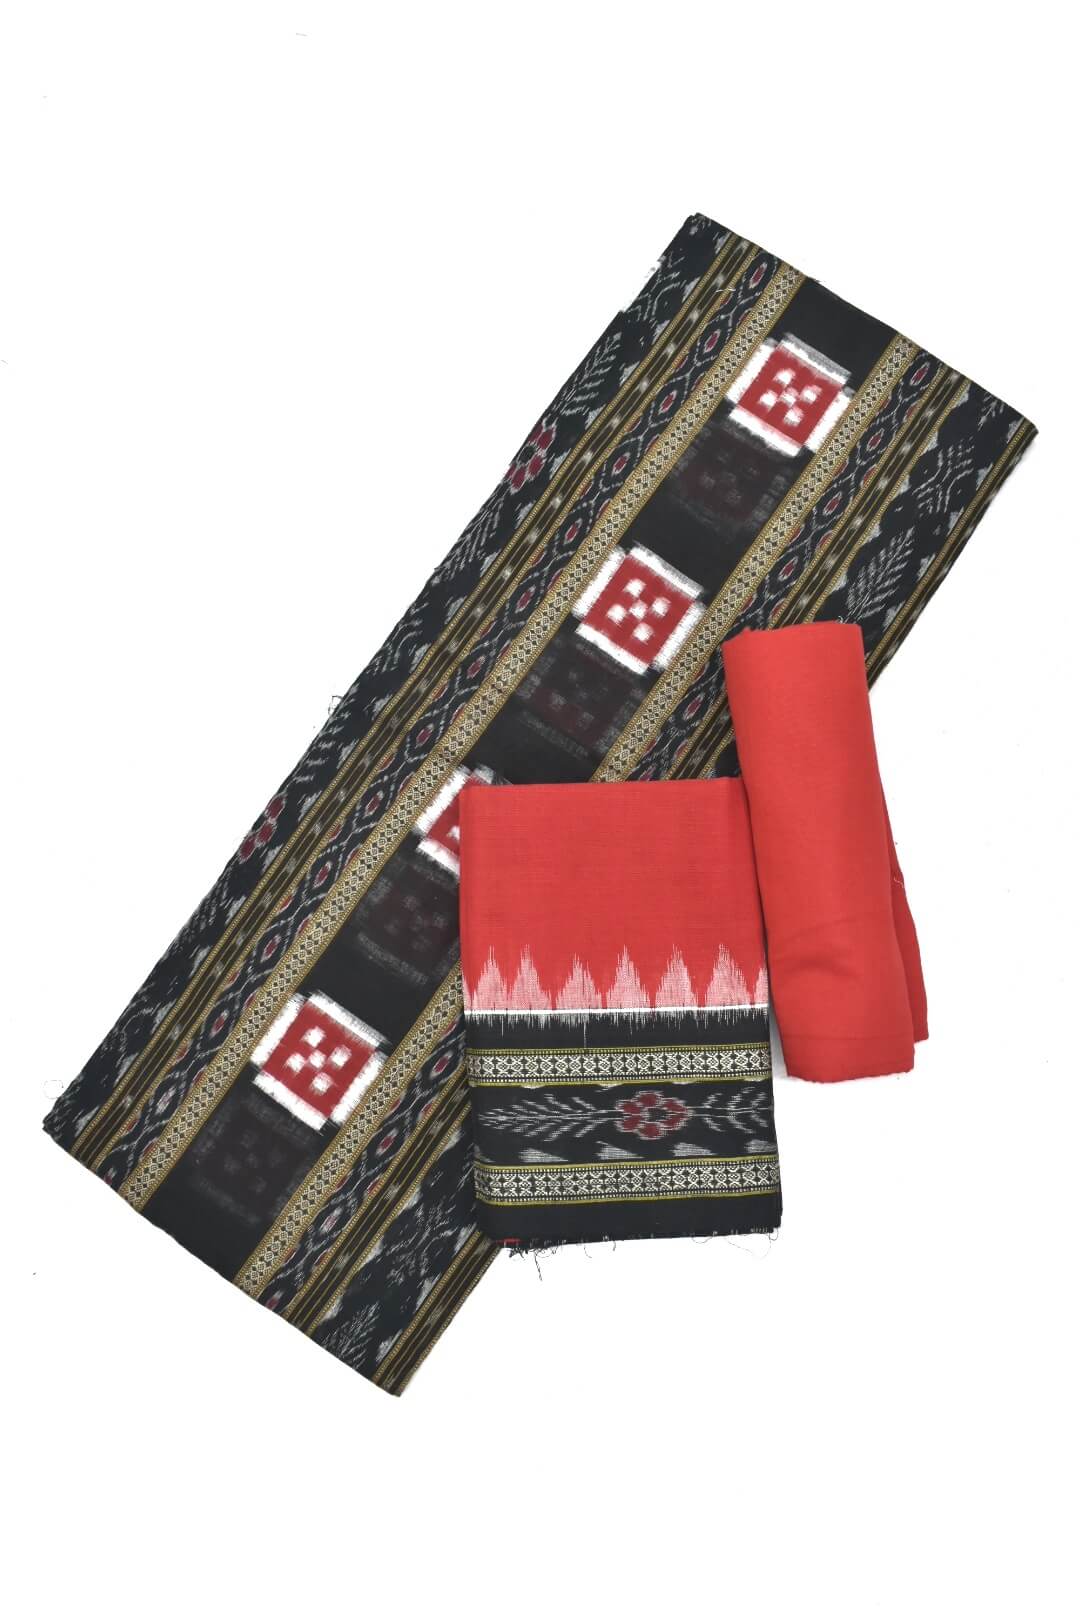 Authentic Handloom Sambalpuri Cotton Dress Material Set | Handloom fashion,  Cotton dress material, Saree styles